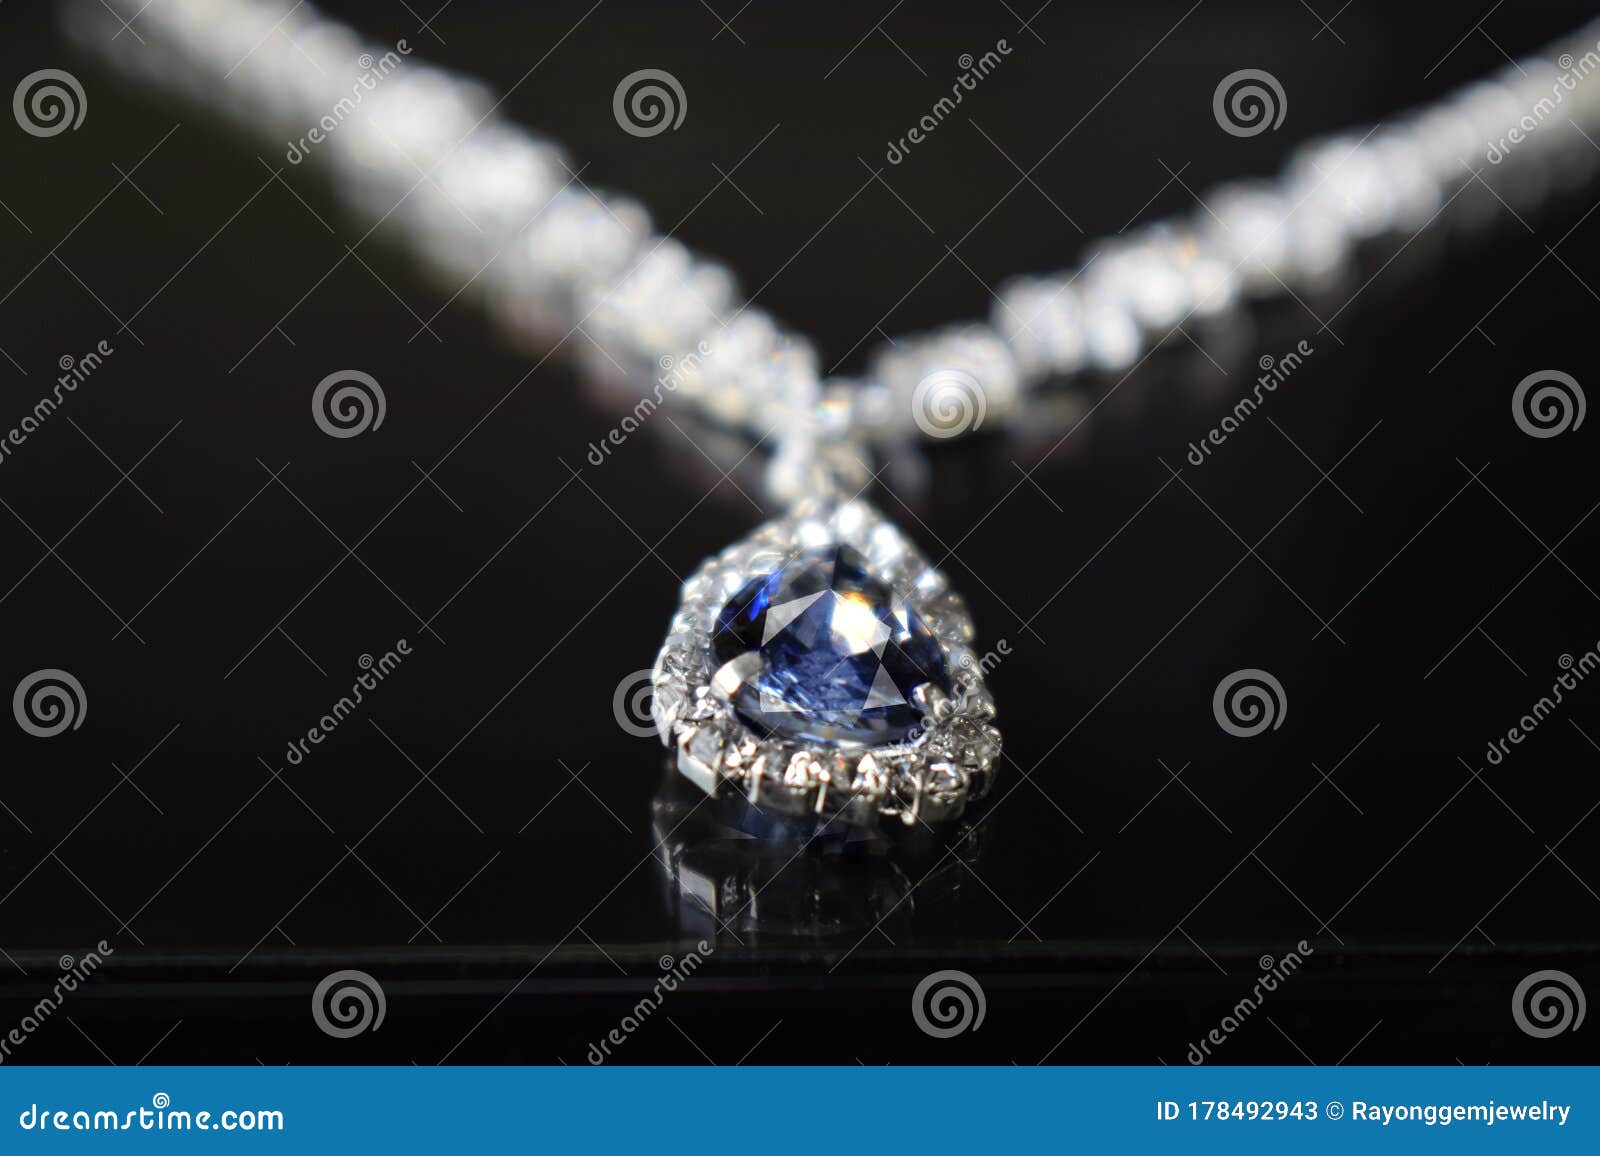 Graff Diamonds | Diamond jewelry set, Graff diamonds, Emerald jewelry